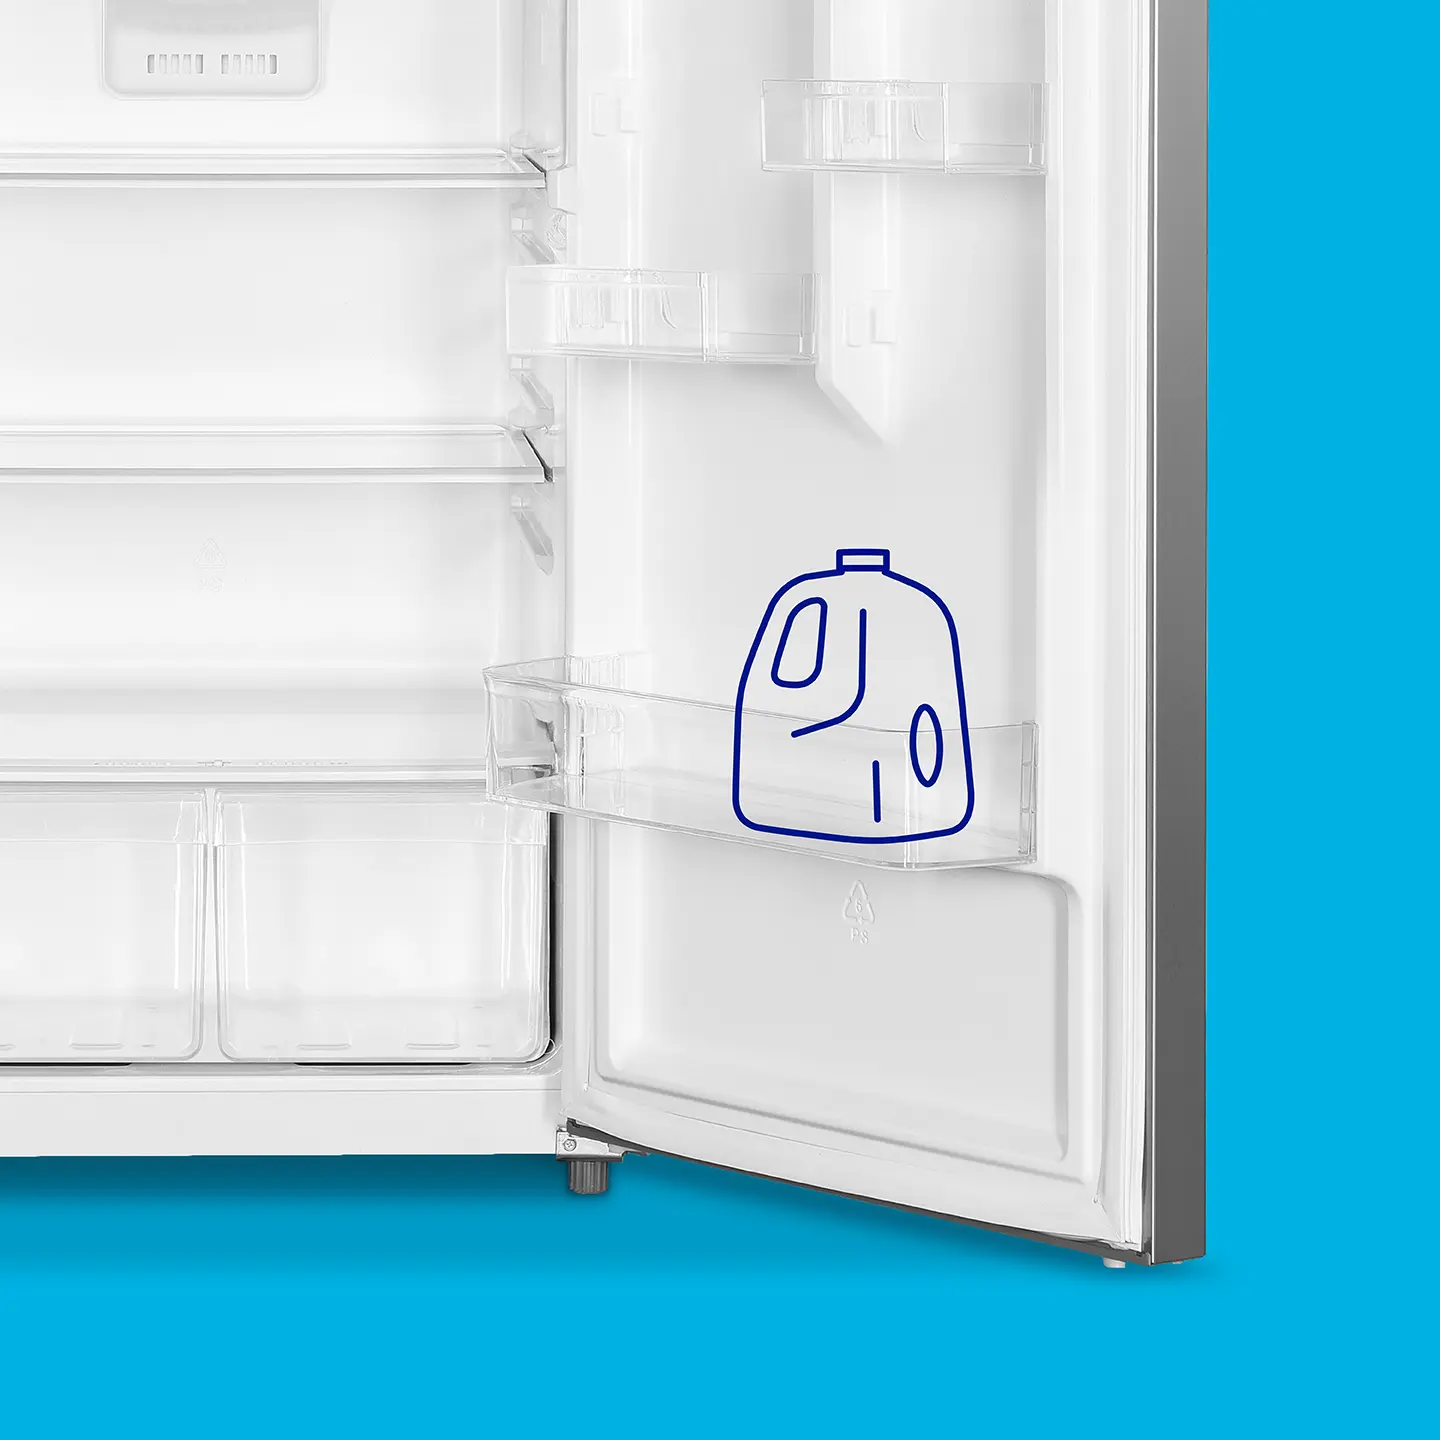 Gallon carton illustration in door bin of refrigerator